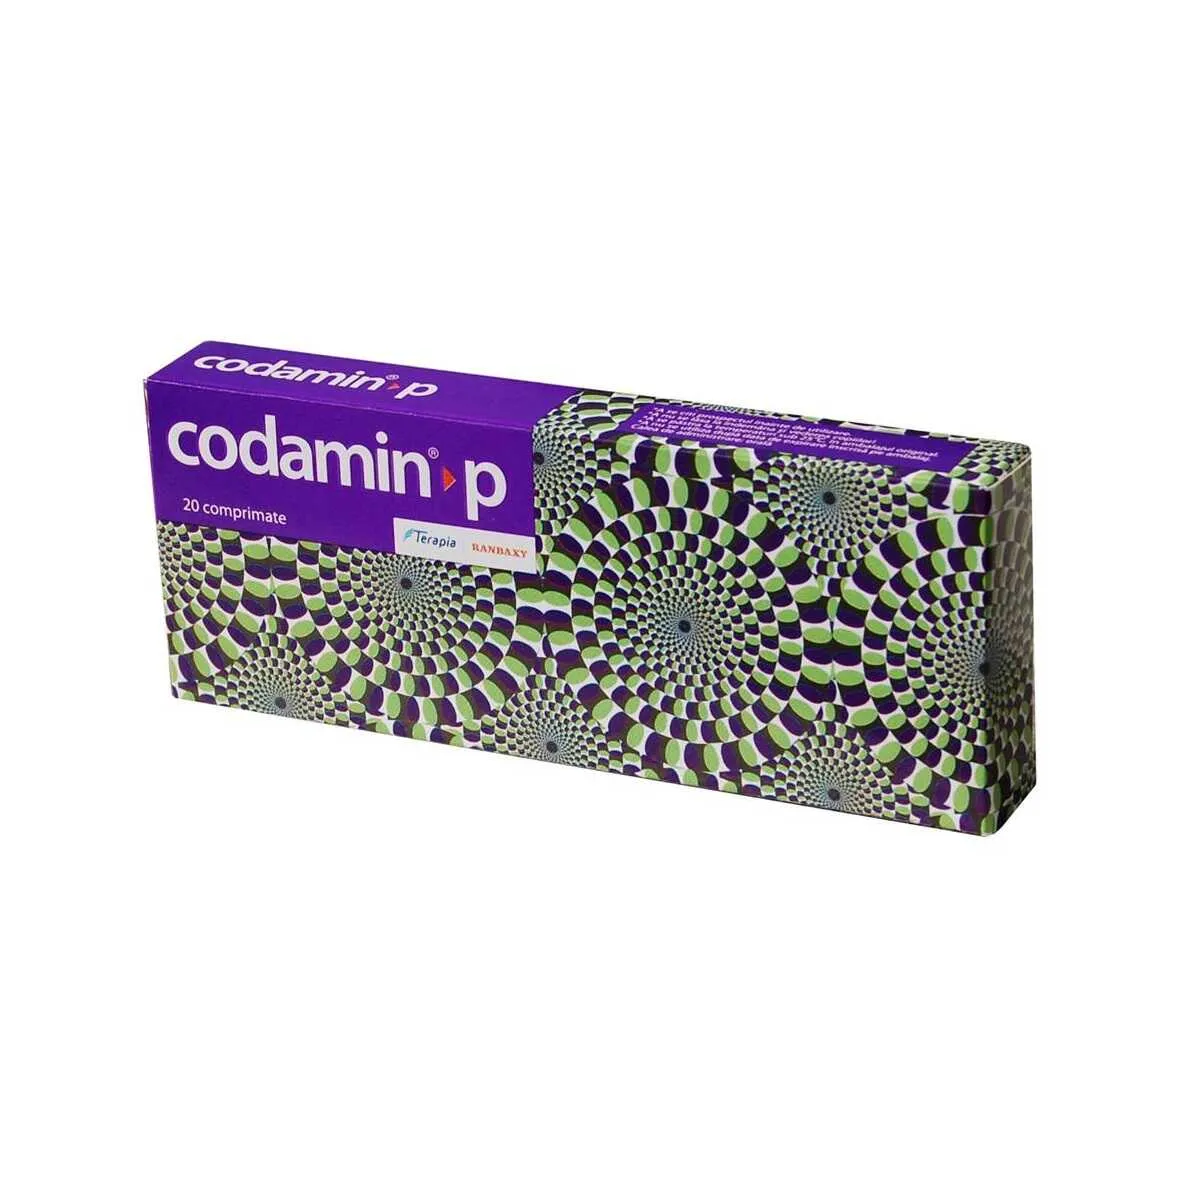 Codamin P x 20 comprimate (Terapia)